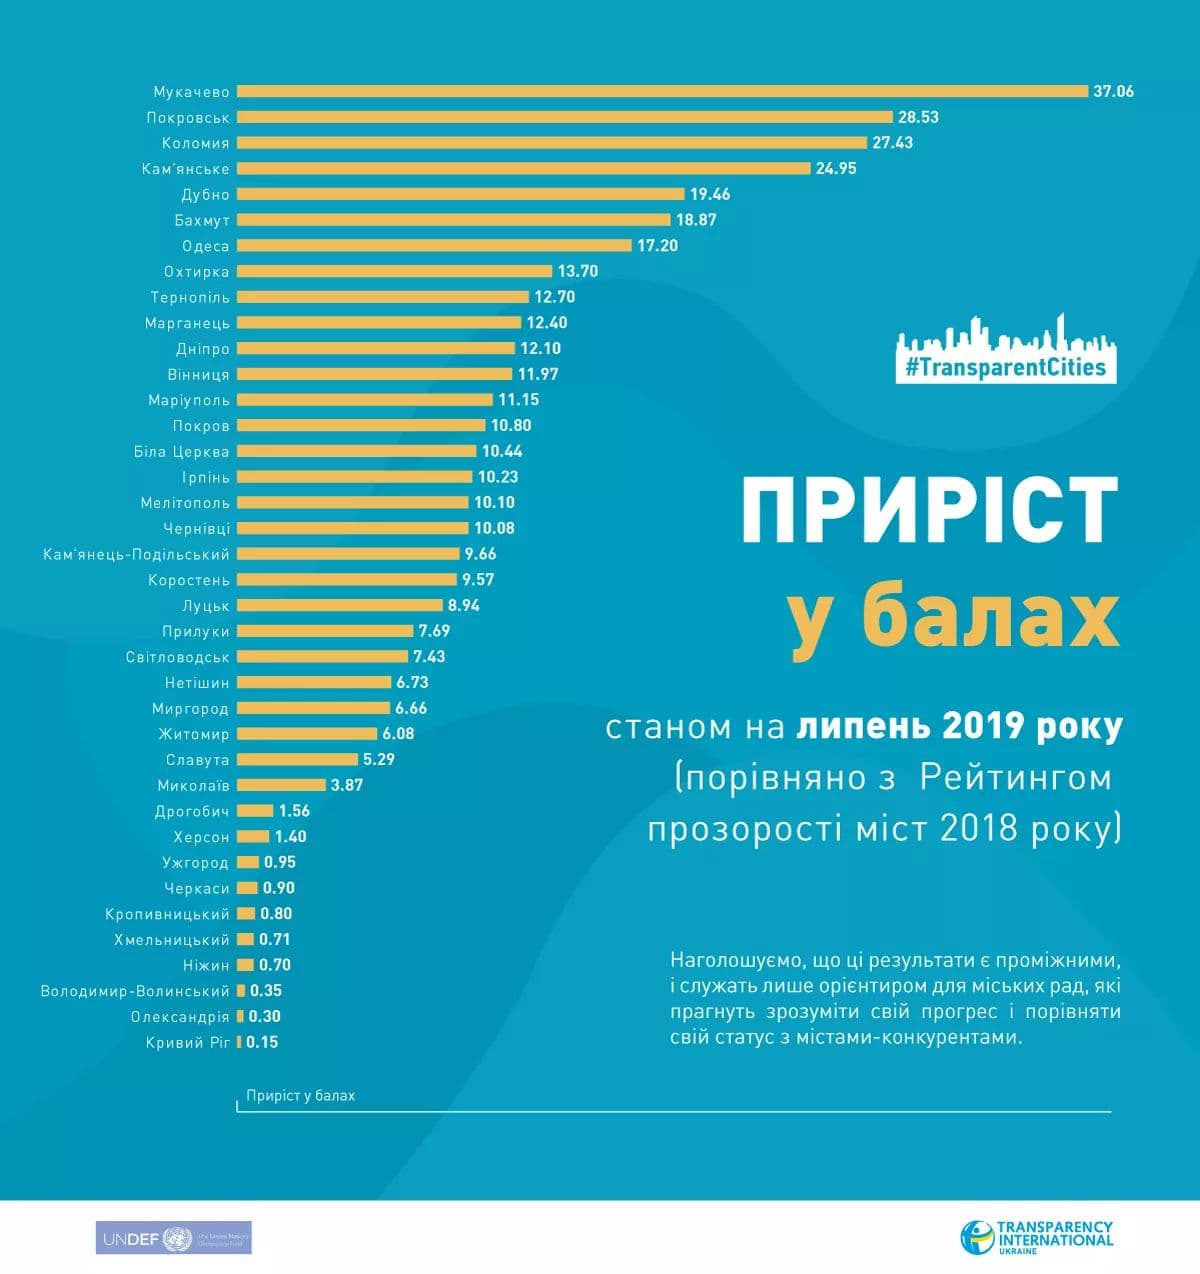 Мукачево – перше за динамікою приросту у рейтингу прозорості міст